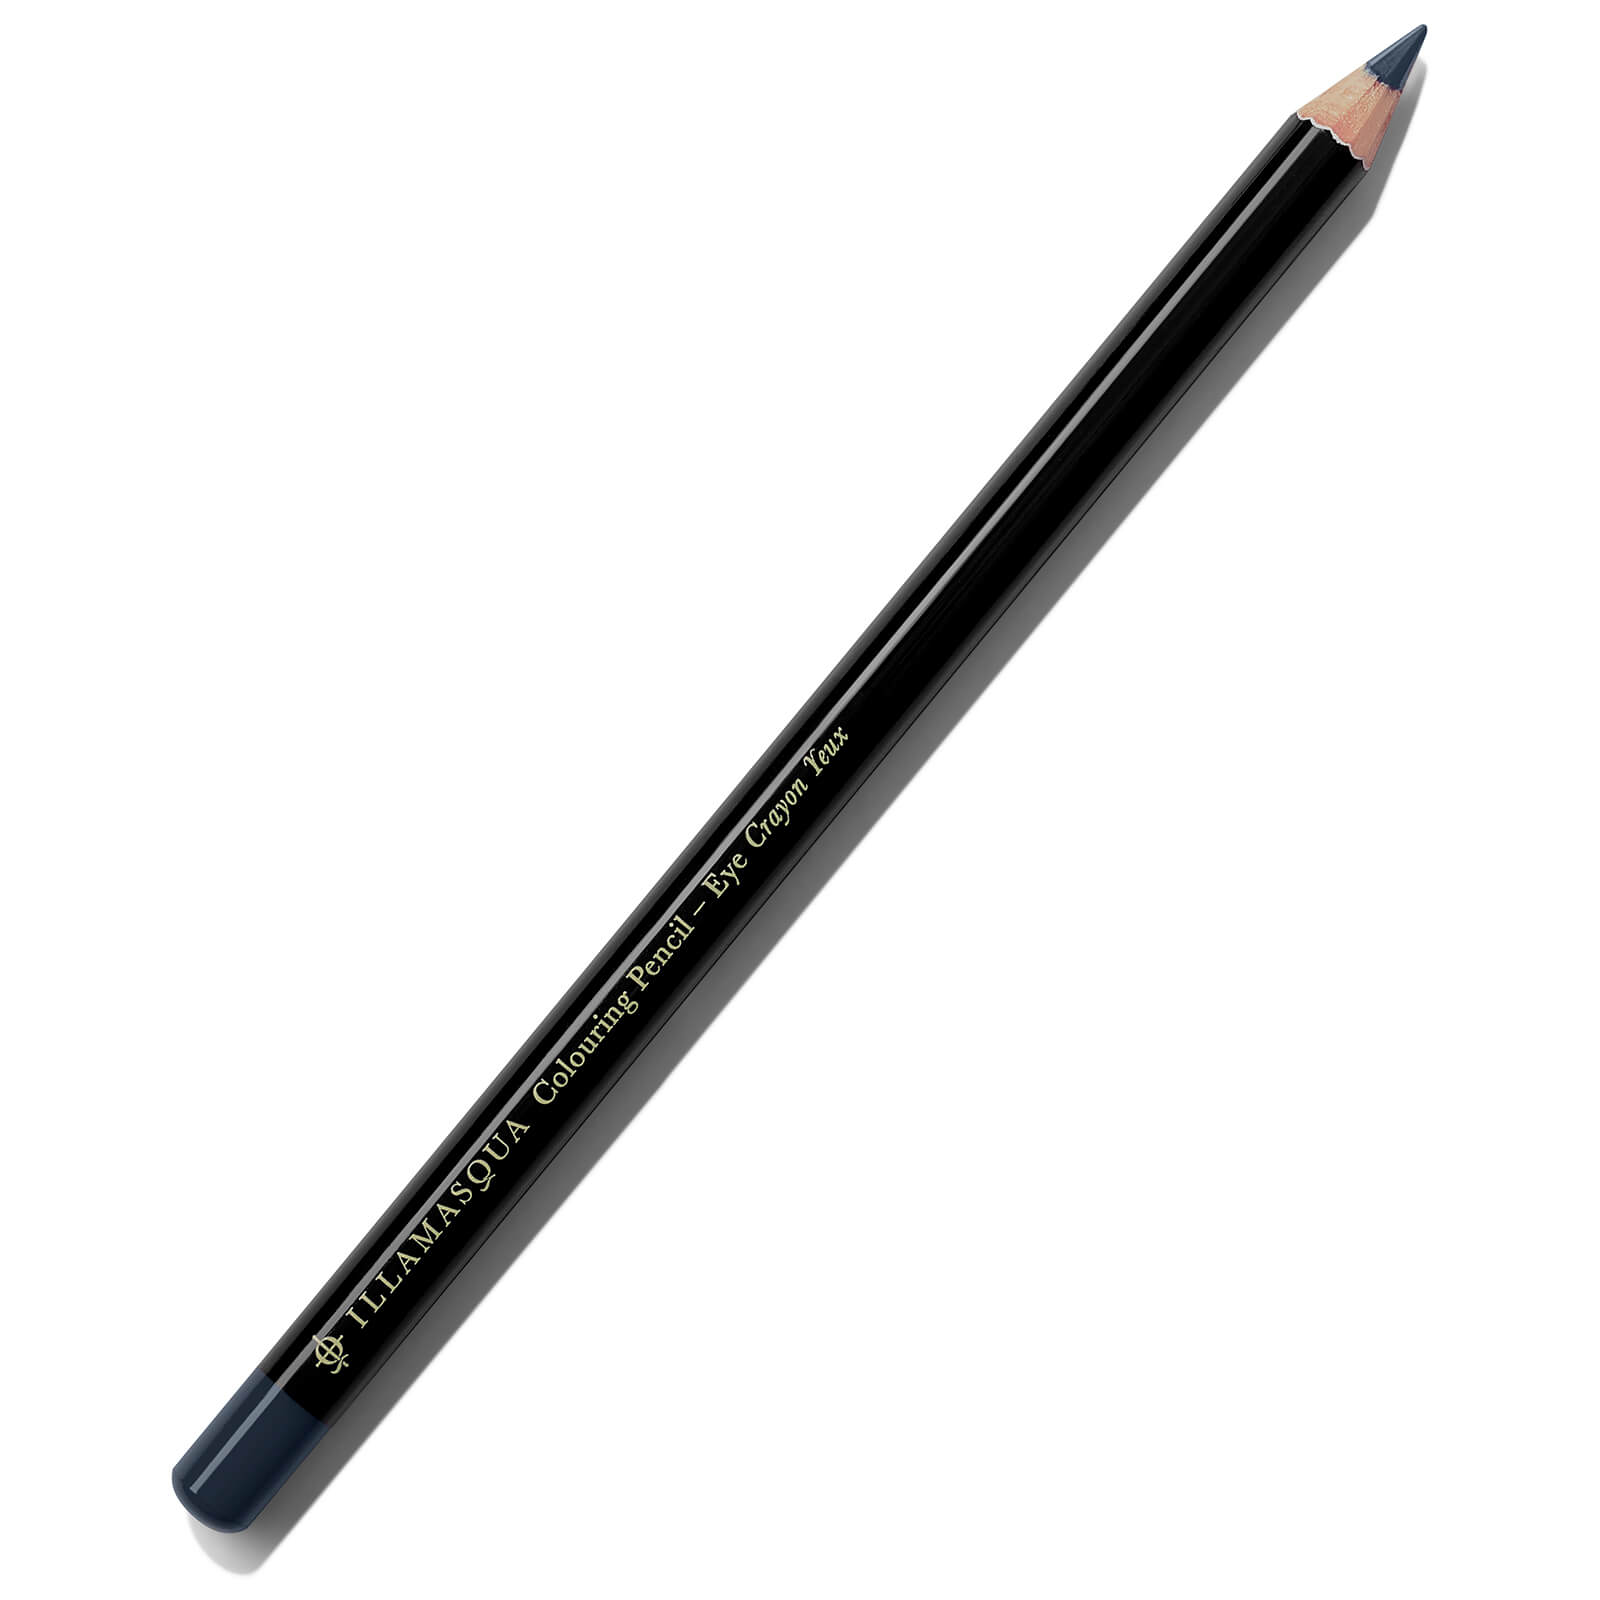 Illamasqua Colouring Eye Pencil 1.4g (Verschiedene Farbtöne) - Navy von Illamasqua